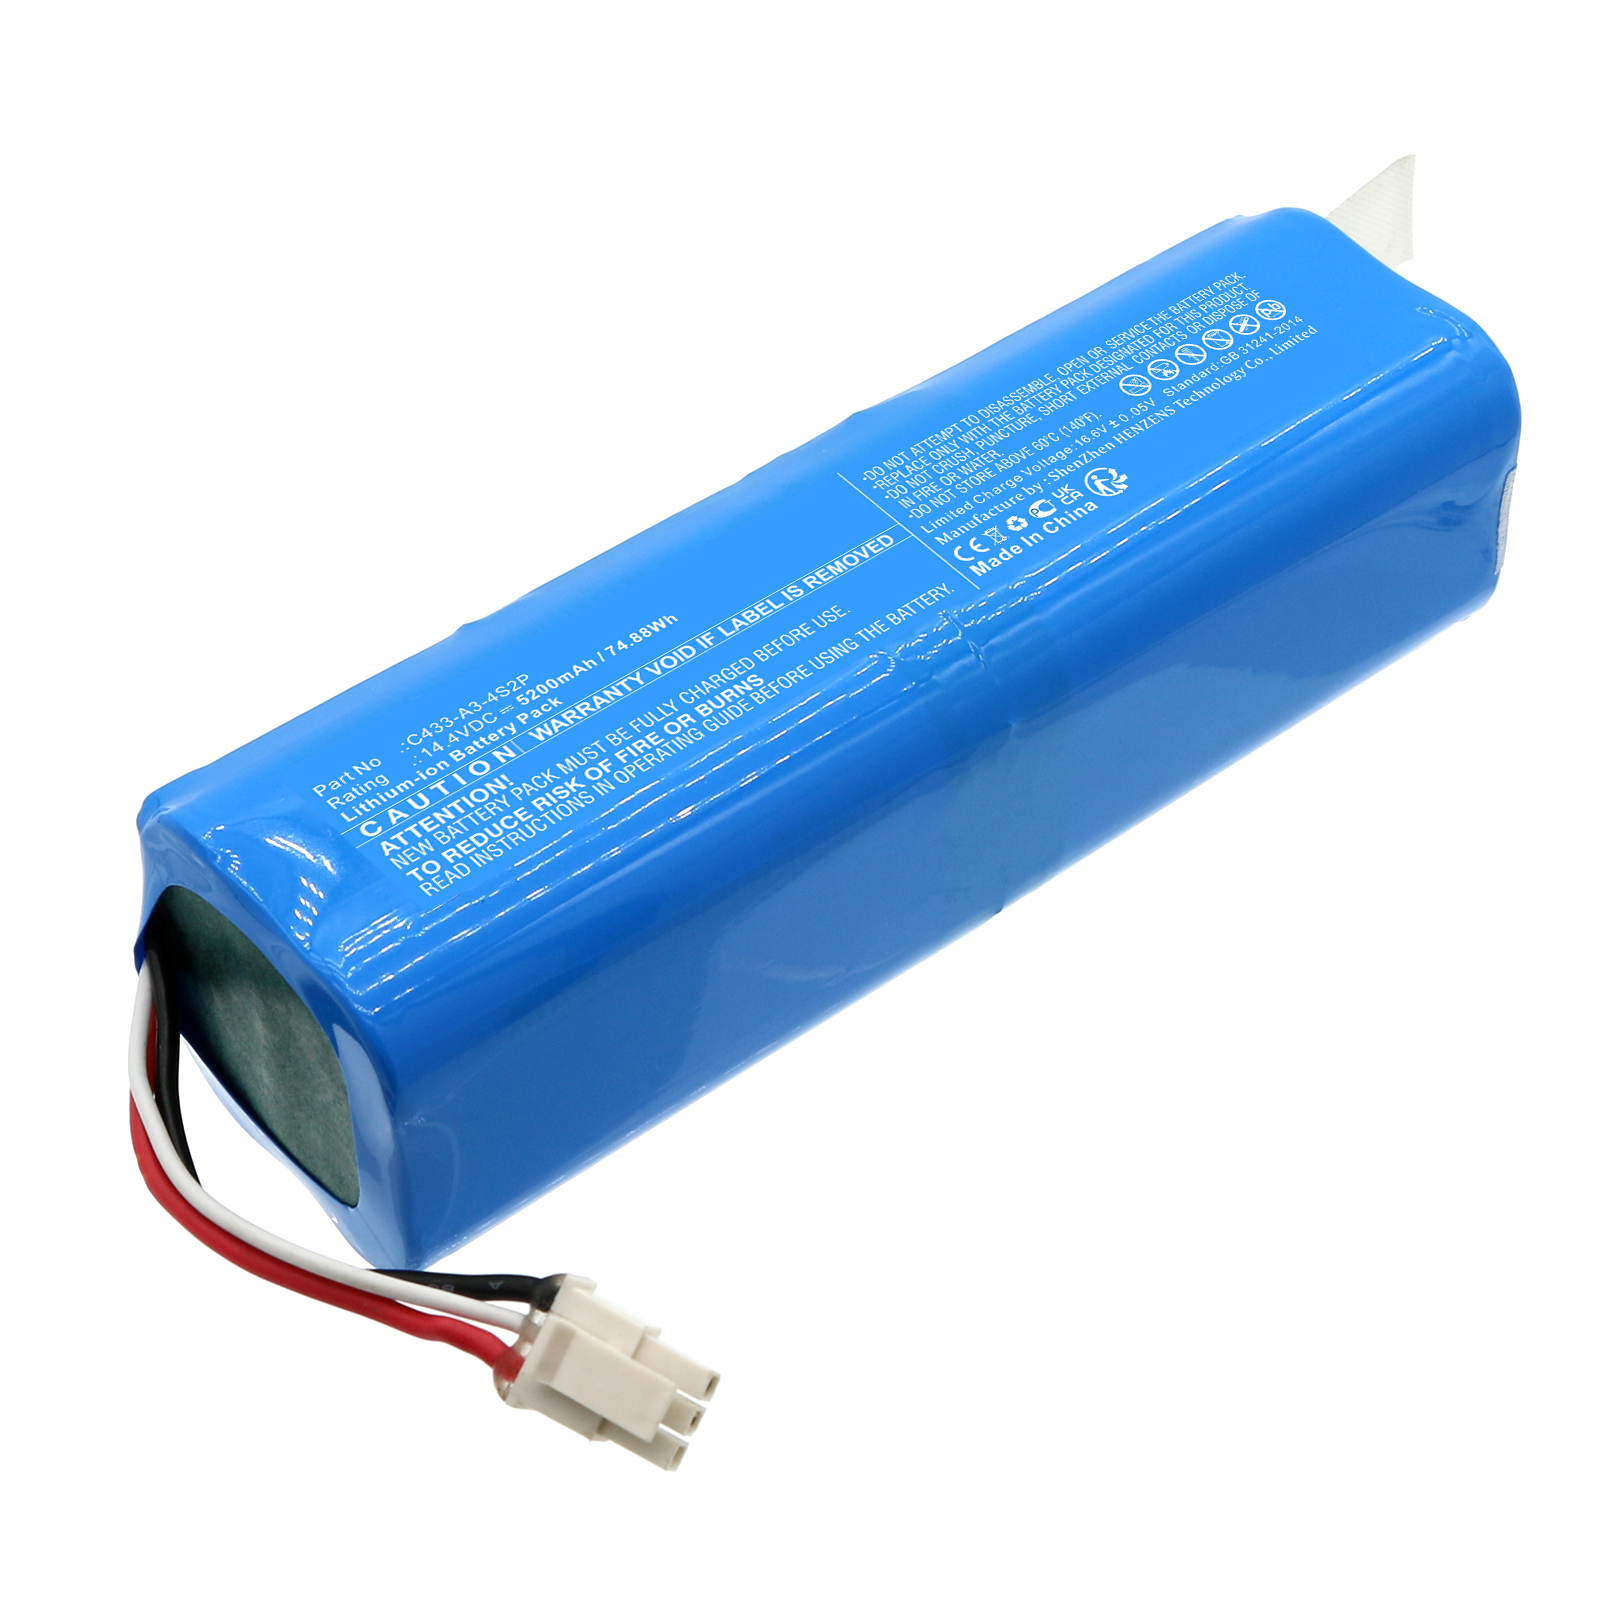 Batteries for NeabotVacuum Cleaner